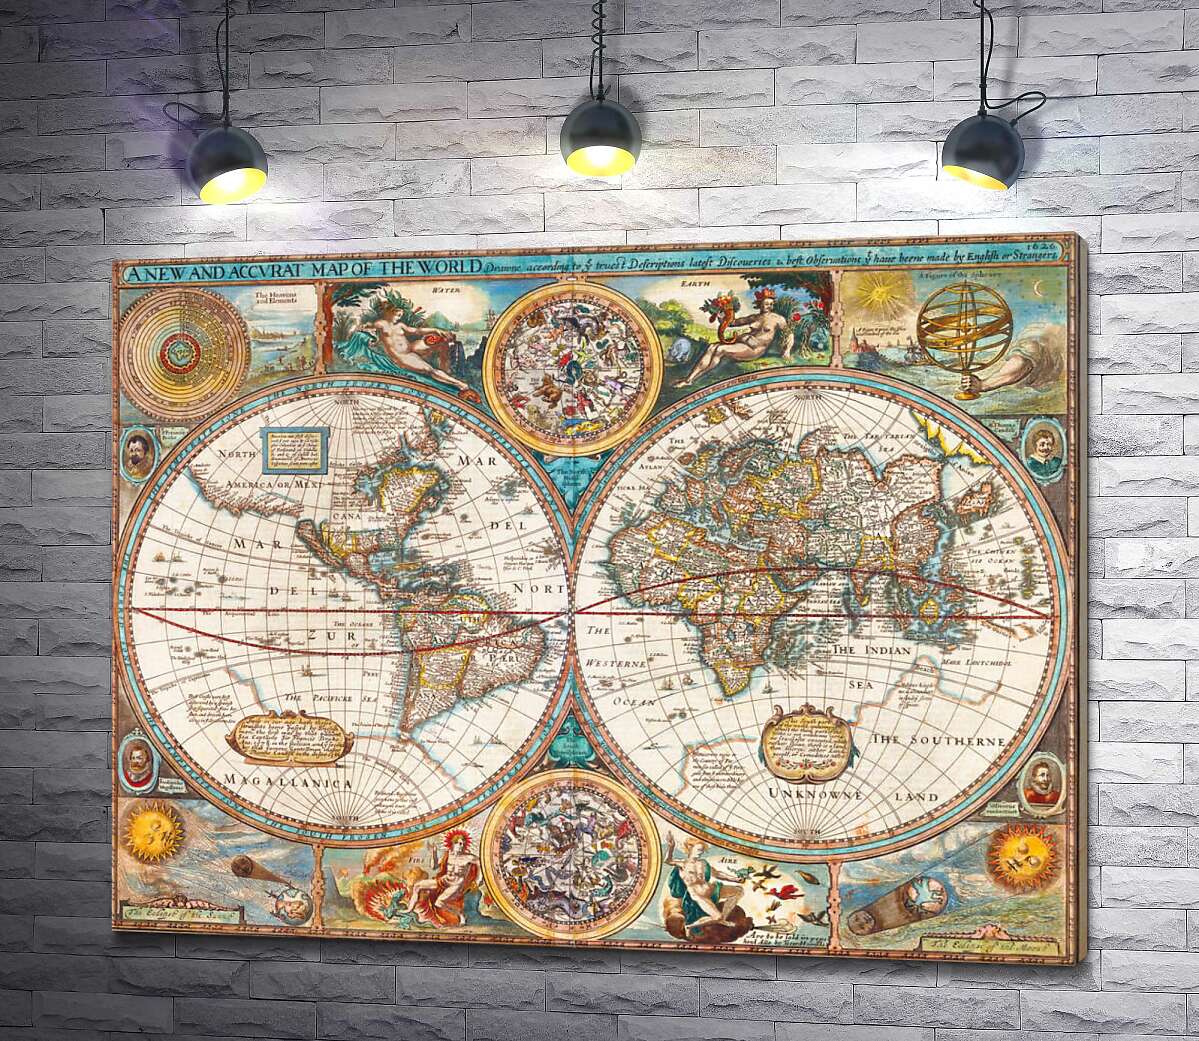 картина Географическая карта "Нового мира" 1627 года, авторства картографа Джона Спида (John Speed)